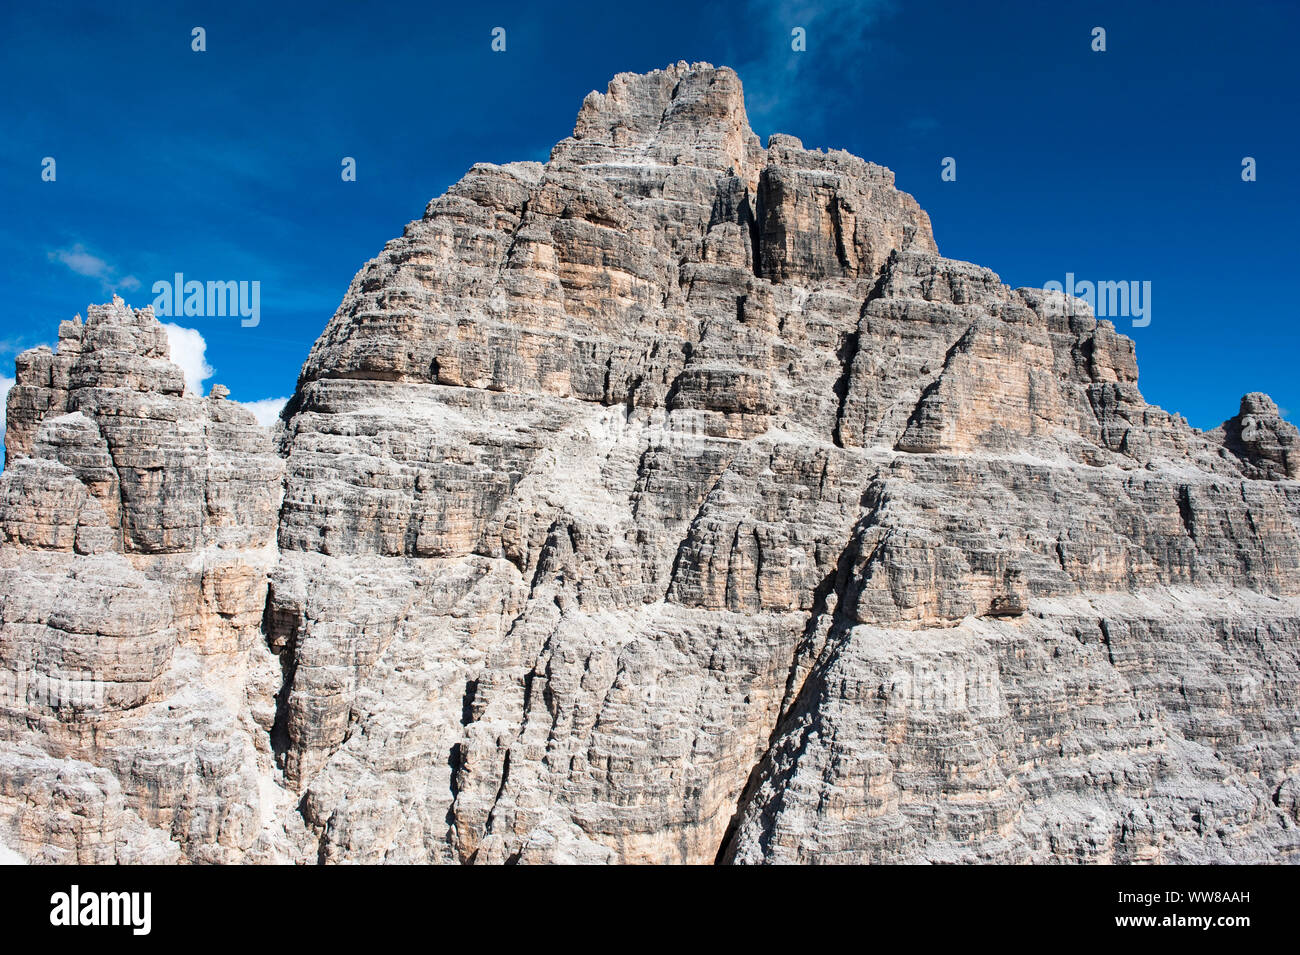 Drei Zinnen, Dolomiten, Sextener Dolomiten, Misurina, Luftaufnahme, Venetien, Italien Stockfoto